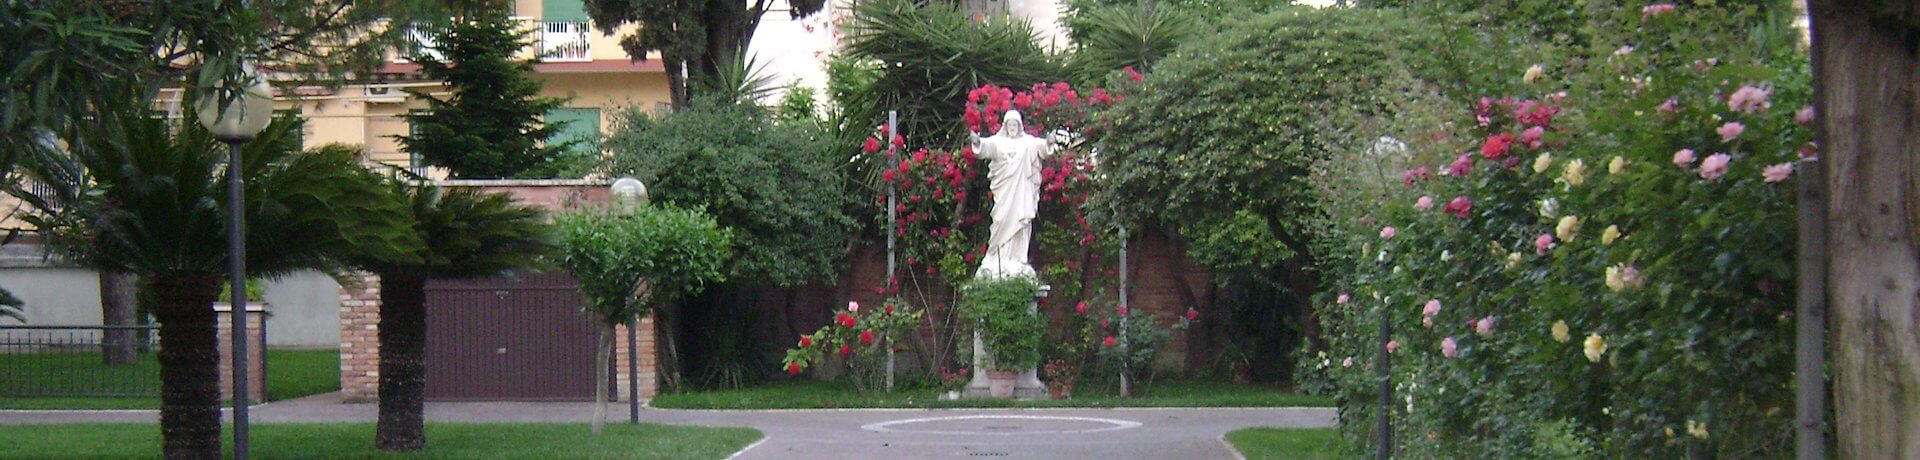 Istituto Sacro Cuore Roma Scuola Sacro Cuore - Giardino con statua di Gesù Cristo